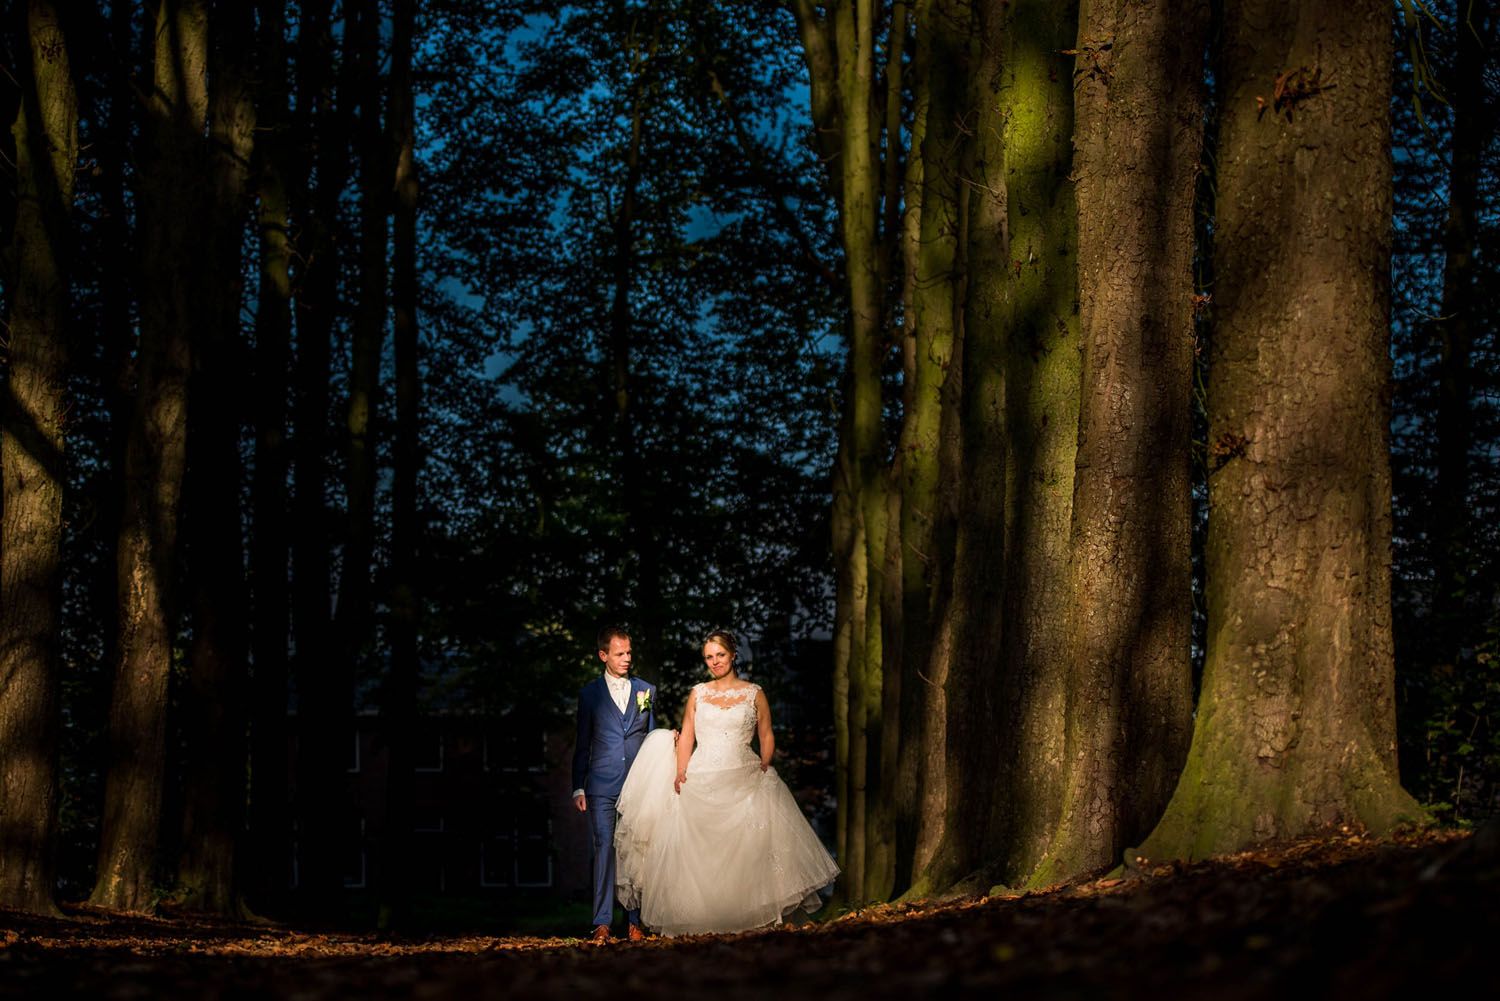 Copy of bomen lanen bij Bovendonk, prachtig decor voor bruidsfotografie foto gemaakt door Caroline Elenbaas